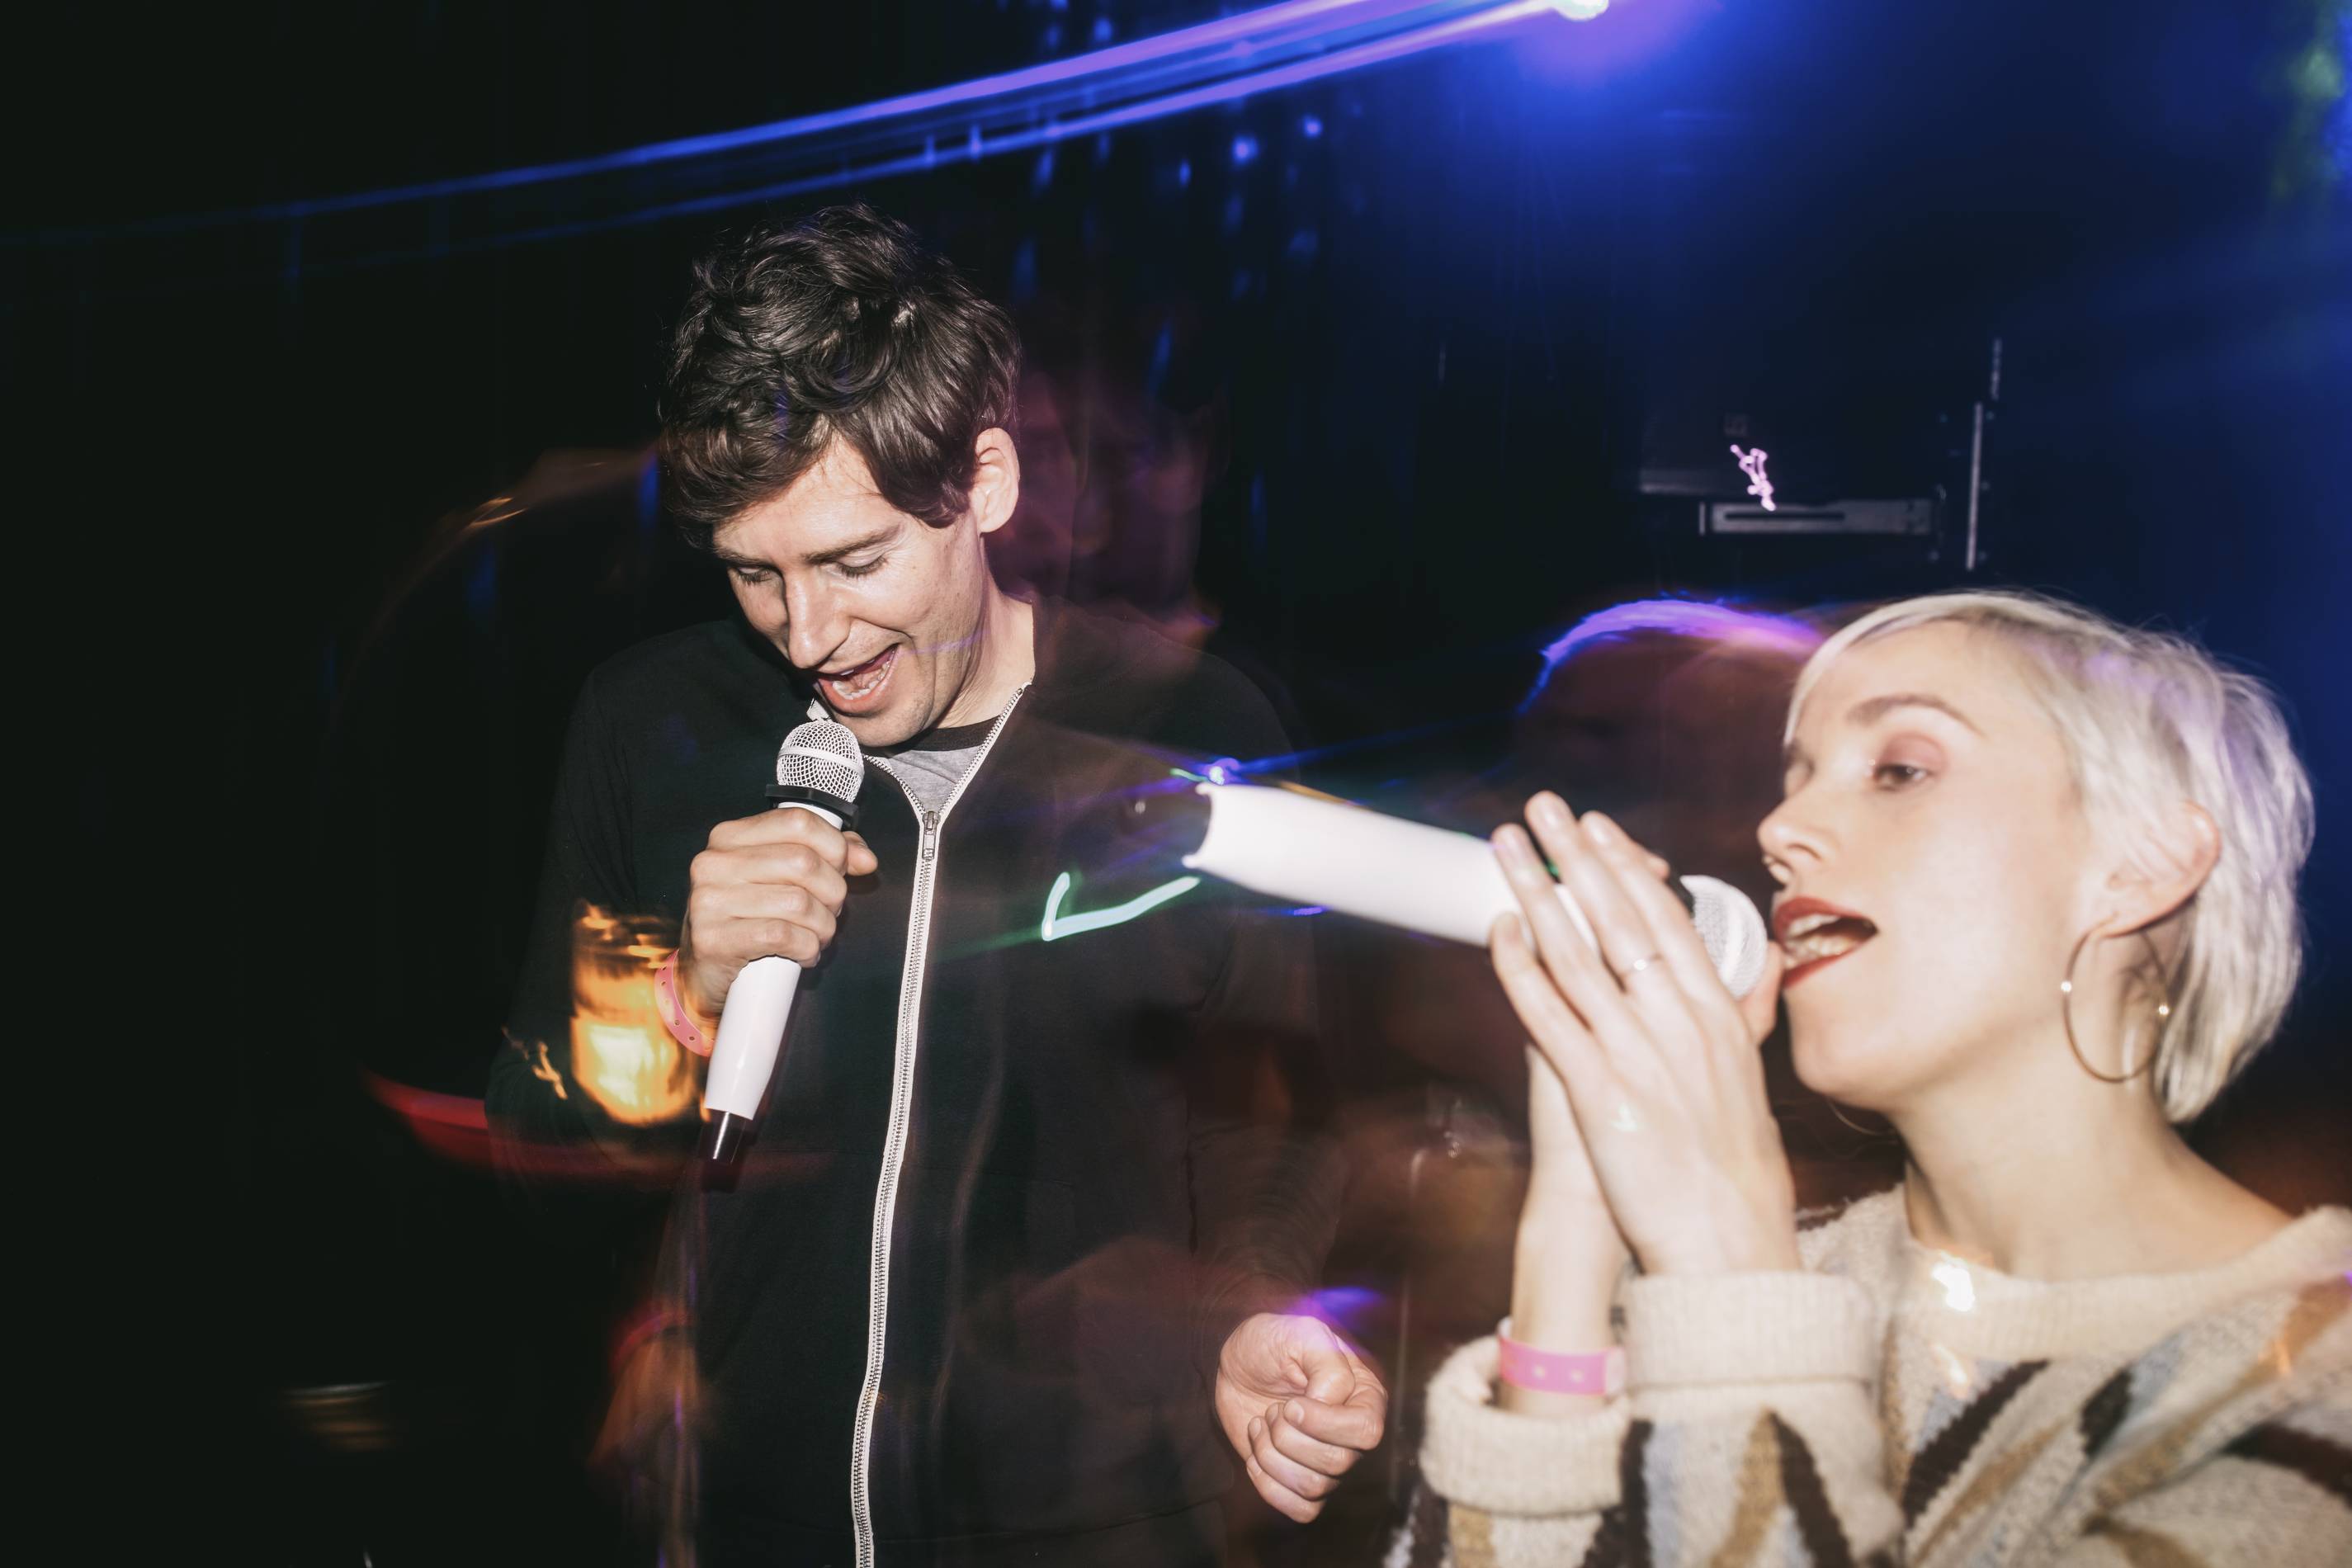 a man and a woman sing karaoke at a bar